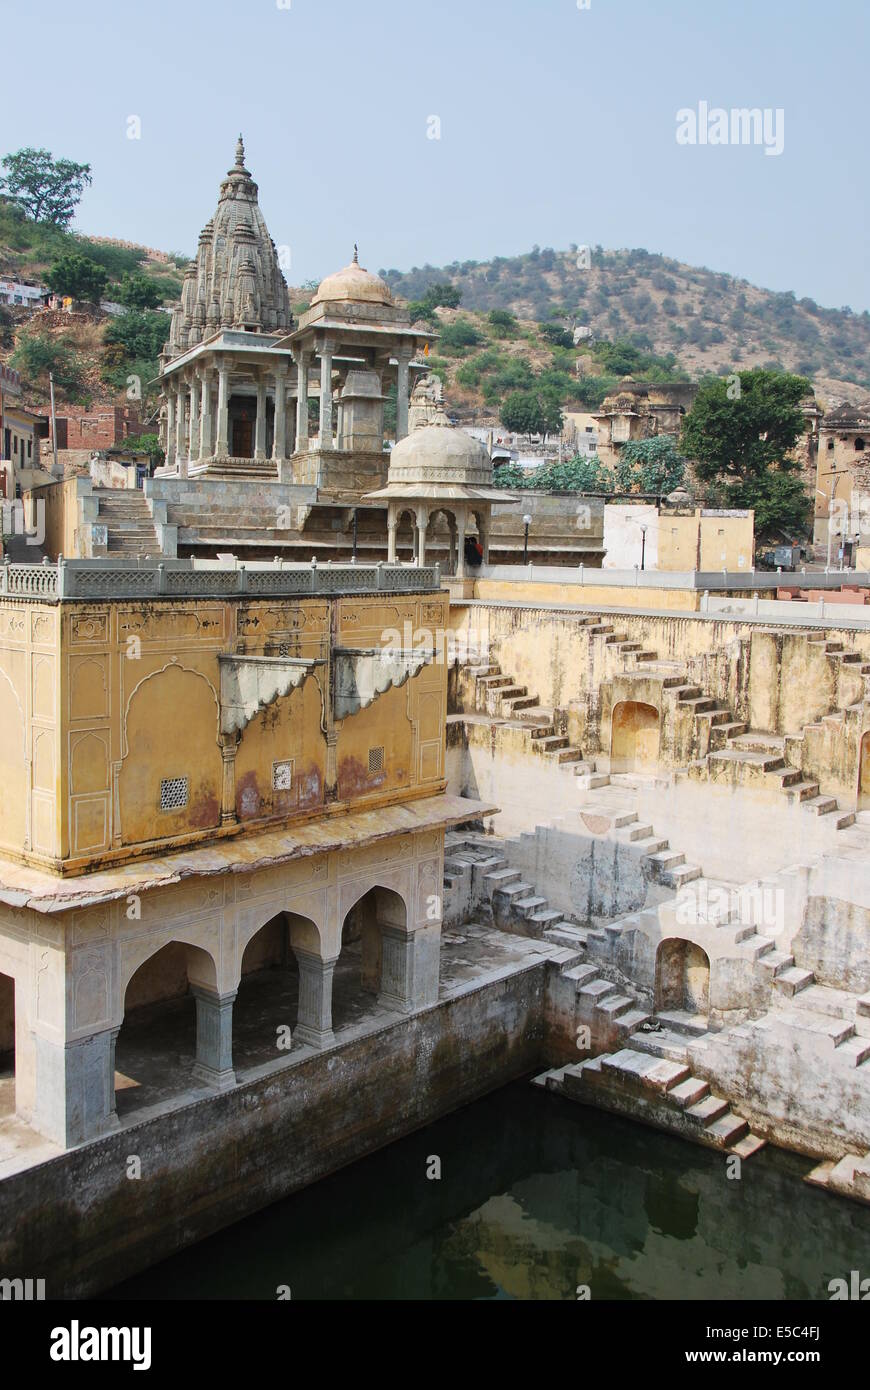 Indien. Rajasthan. Amber Fort, allgemein bekannt als Amer Fort, ist eine wichtige touristische Attraktion in Jaipur. Alter Brunnen. Stockfoto